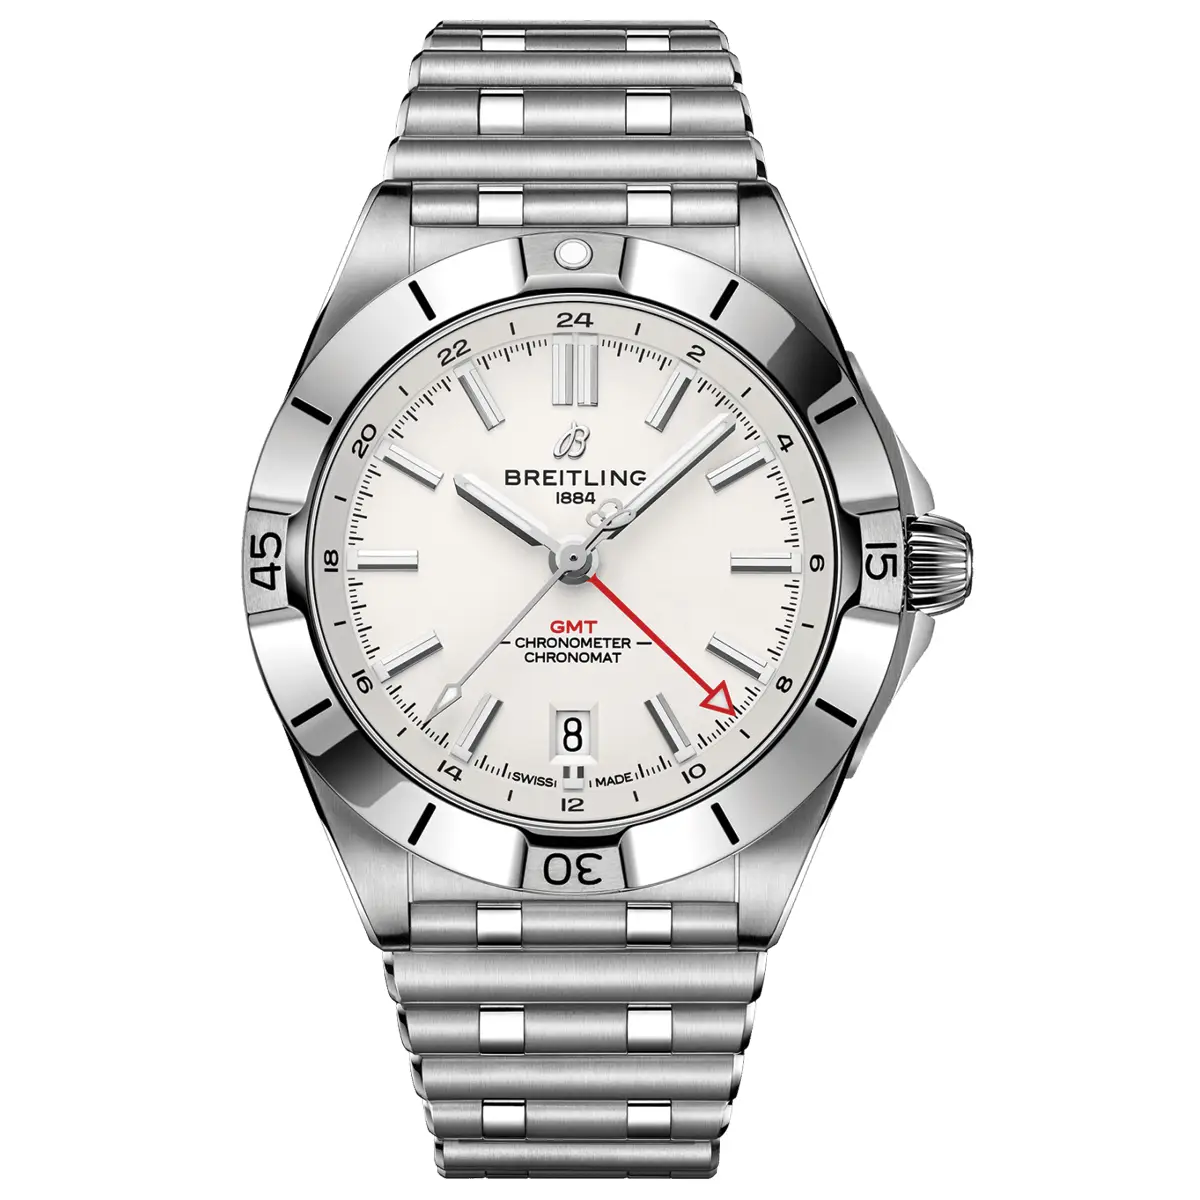 Đồng hồ Breitling Chronomat Automatic GMT 40 A32398101A1A1 mặt số màu trắng. Dây đeo bằng thép. Thân vỏ bằng thép.